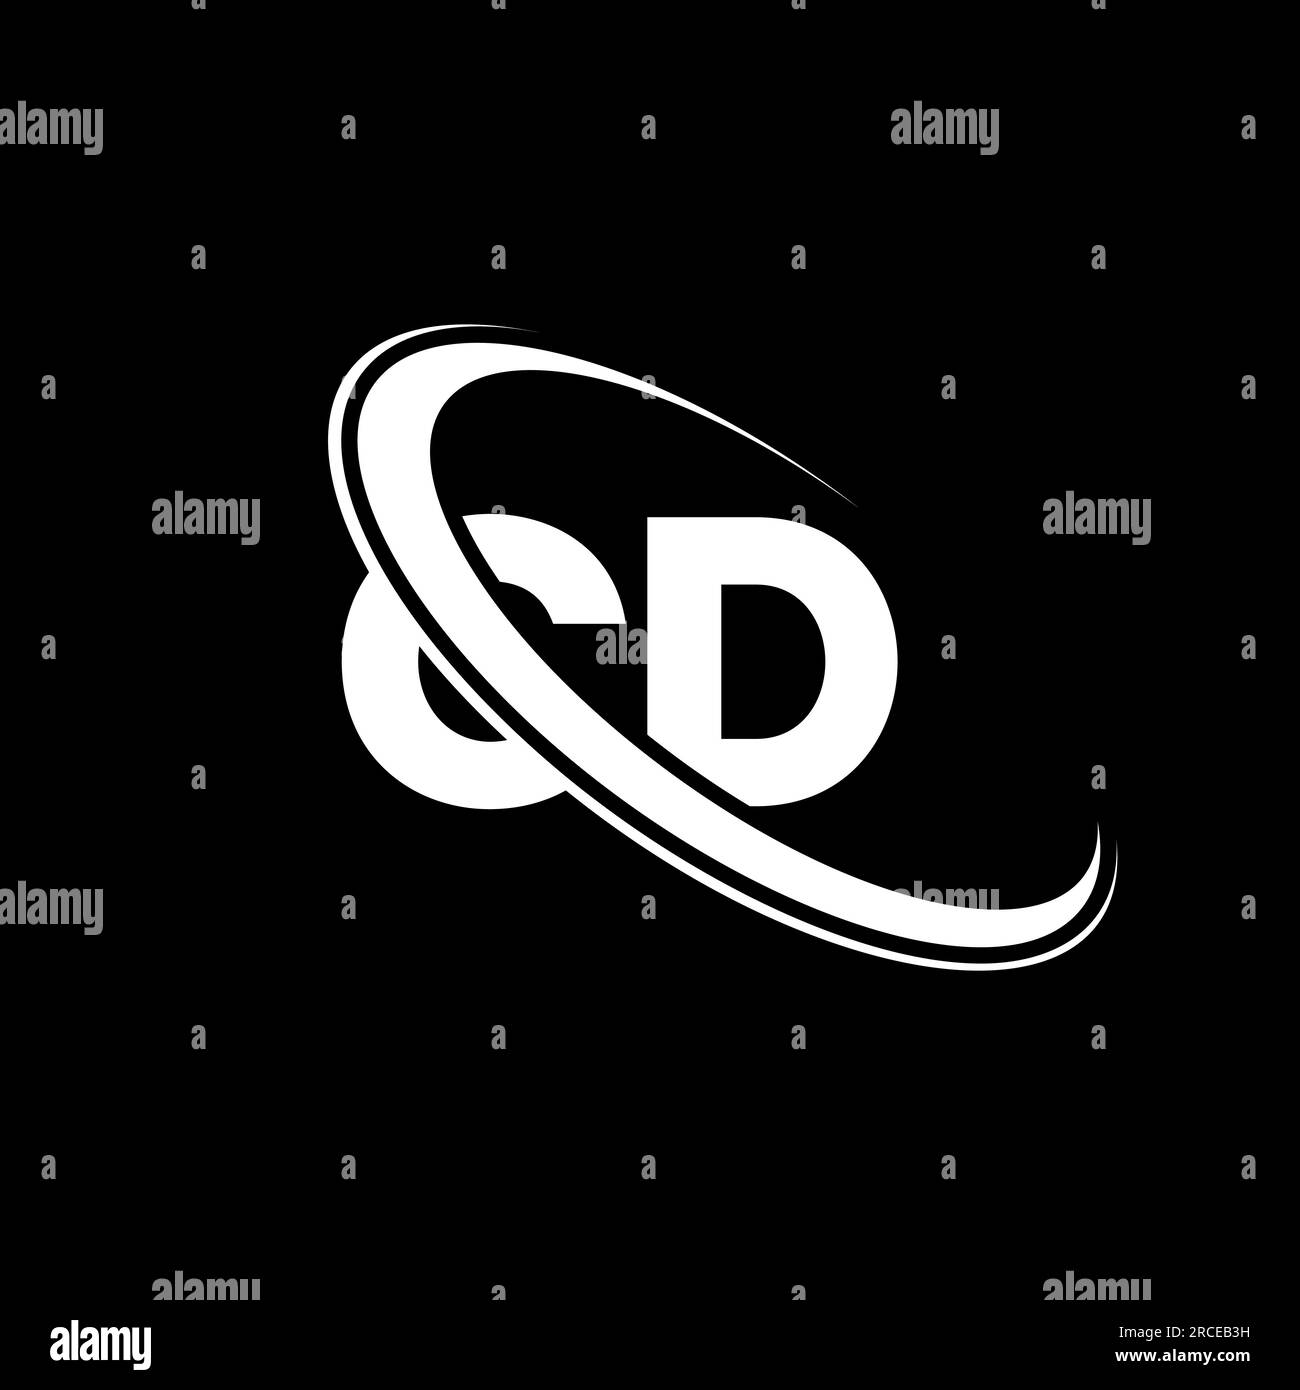 CD logo. C D design. White CD letter. CD/C D letter logo design. Initial letter CD linked circle uppercase monogram logo. Stock Vector